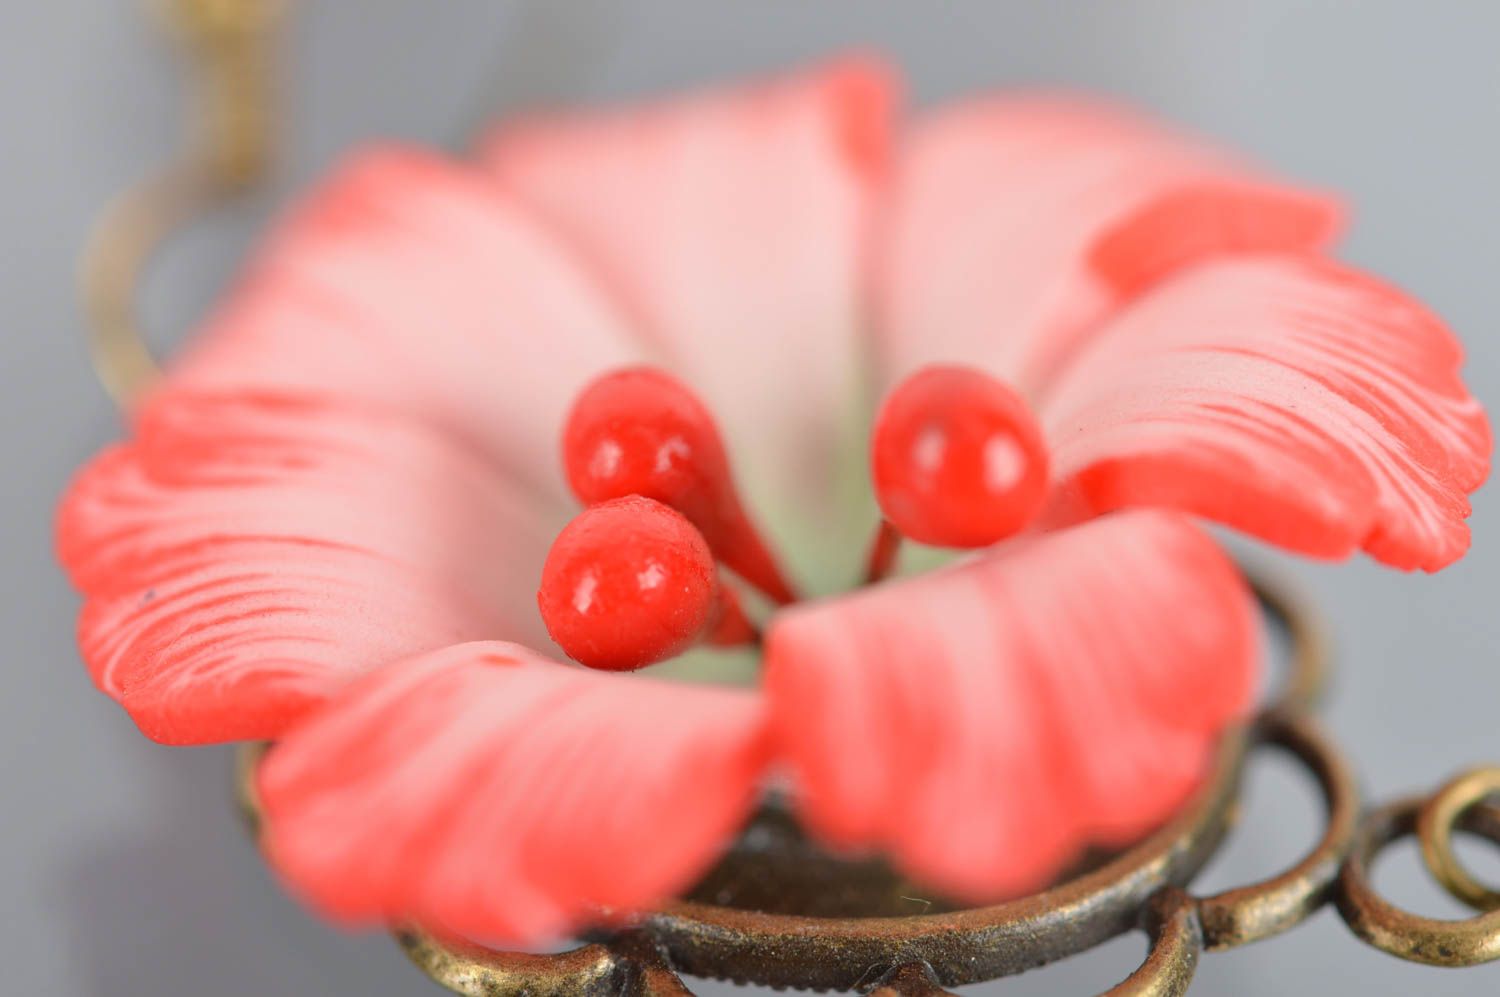 Мылые маленькие серьги с цветами из полимерной глины для стильных образов фото 4